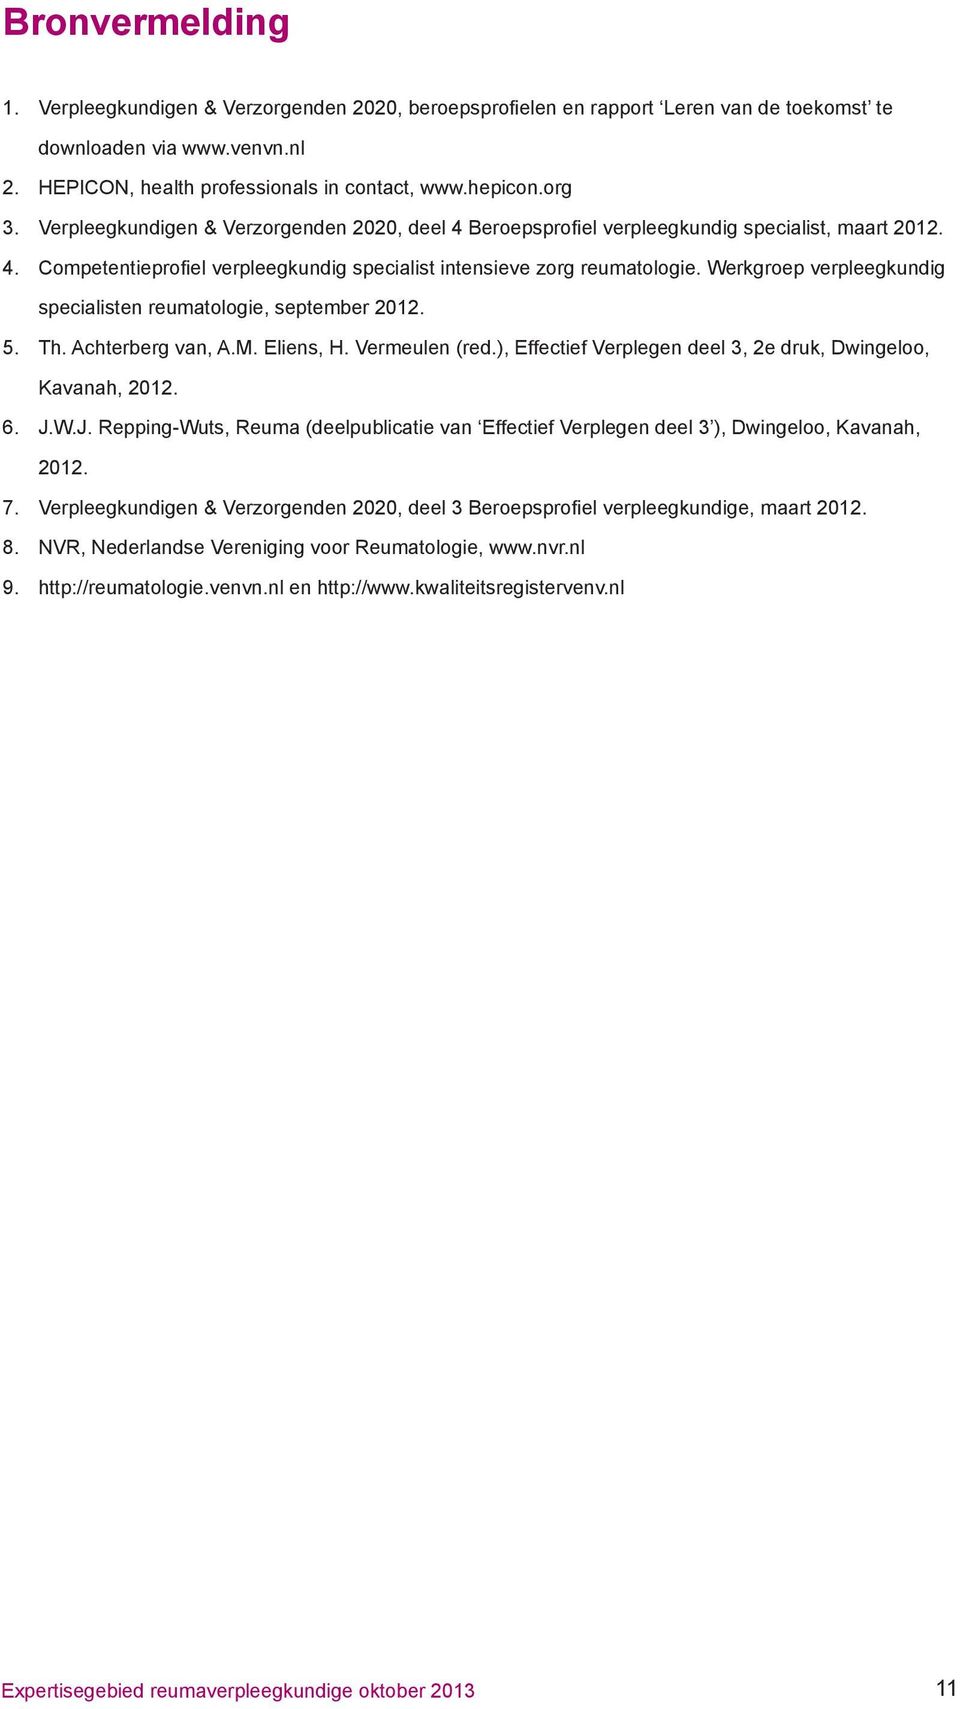 Werkgroep verpleegkundig specialisten reumatologie, september 2012. 5. Th. Achterberg van, A.M. Eliens, H. Vermeulen (red.), Effectief Verplegen deel 3, 2e druk, Dwingeloo, Kavanah, 2012. 6. J.